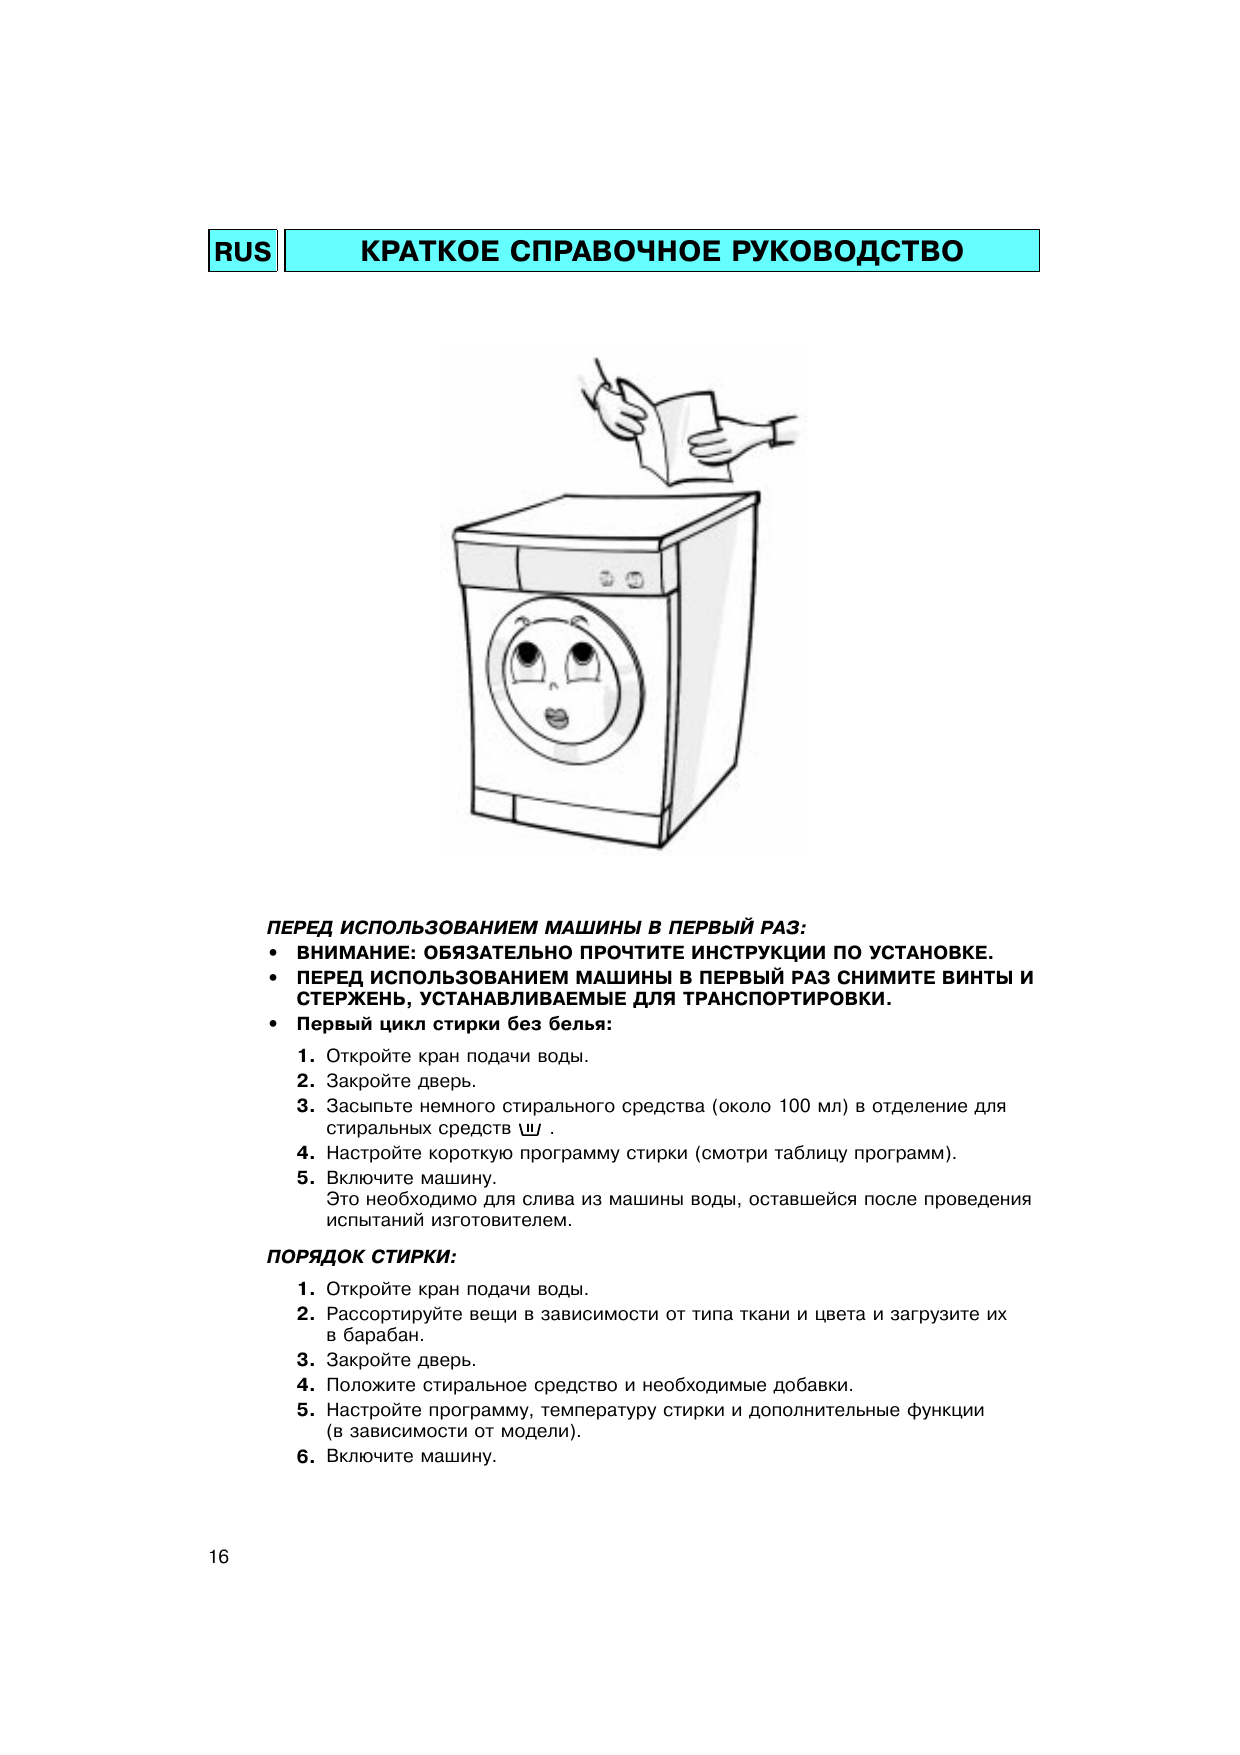 Уход за стиральной машиной автомат: как правильно почистить внутри и снаружи?